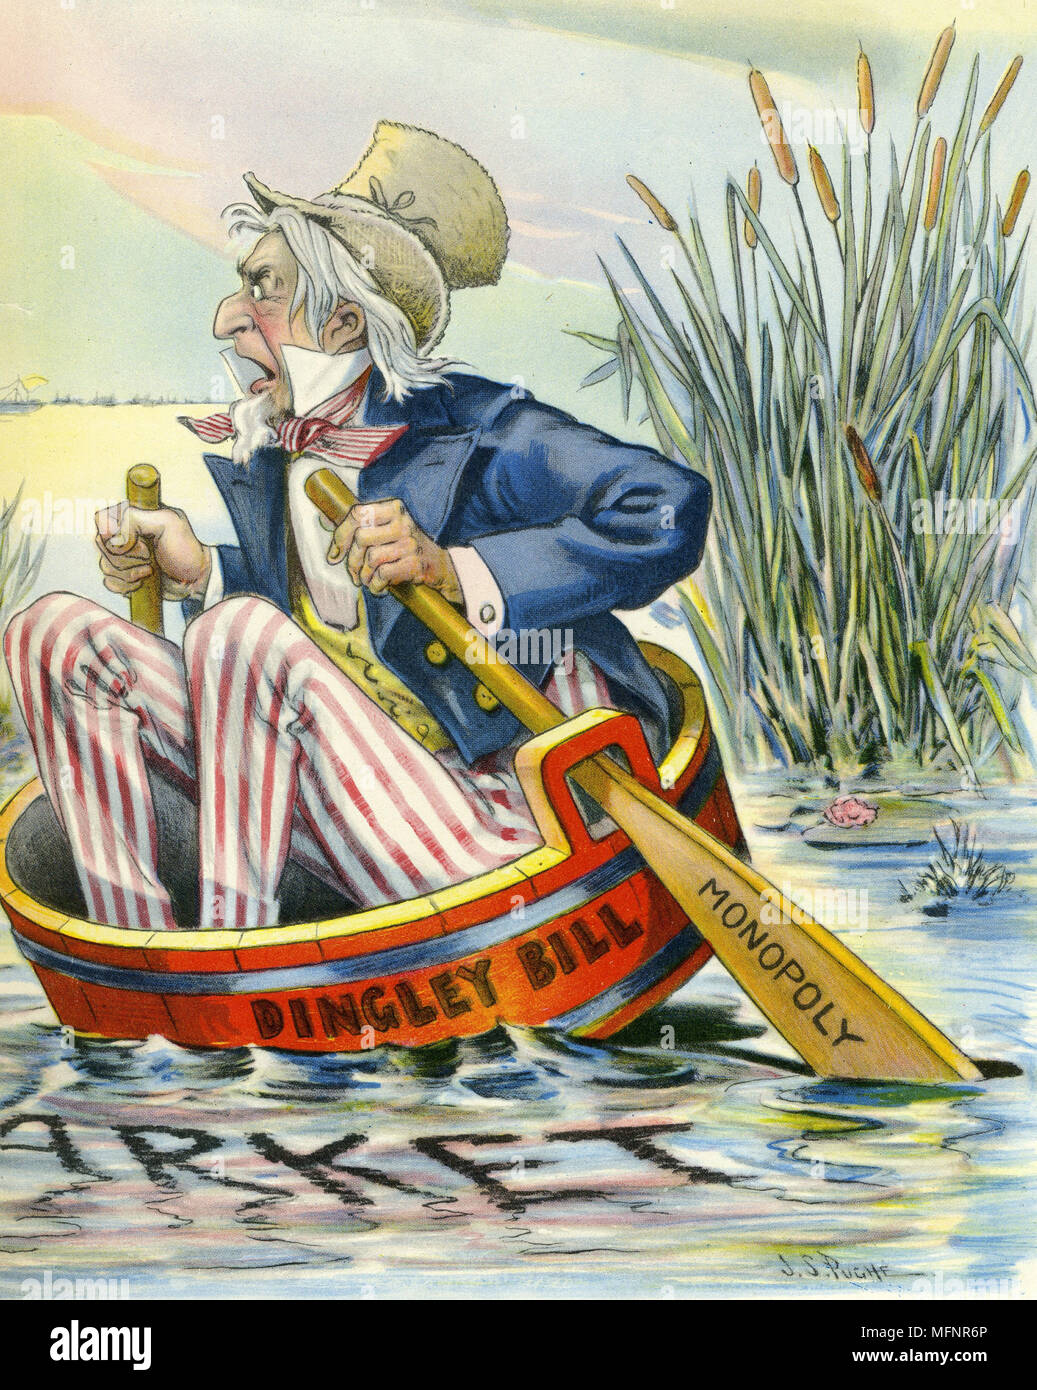 Uncle Sam (Amerika) in der Gefahr des Sinkens durch Präsident McKinley (Dingley Bill) und seine Politik von Monopolen. Cartoon-1900. Stockfoto